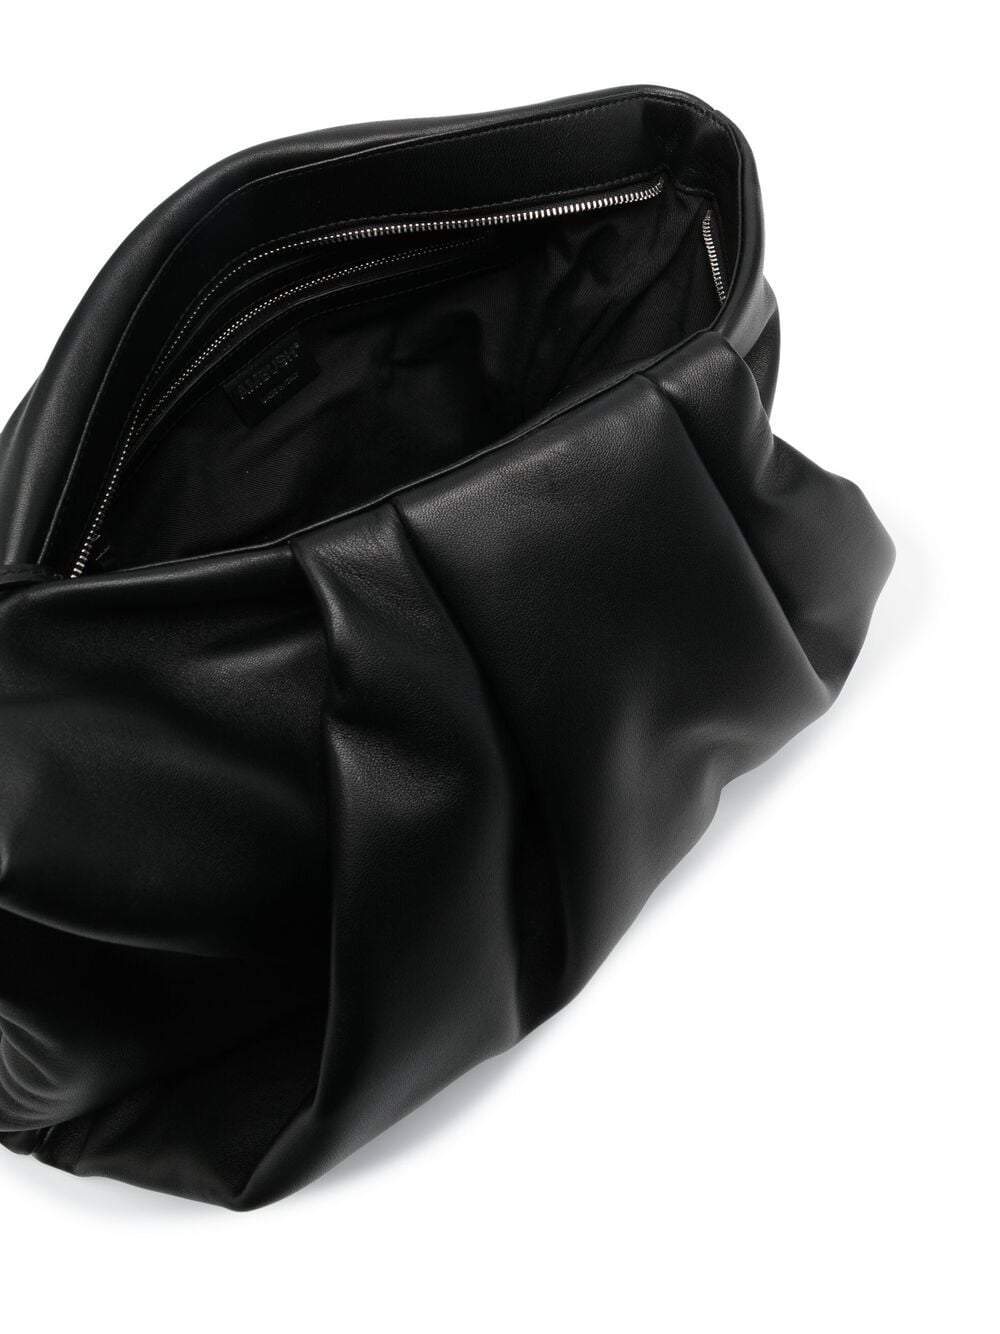 AMBUSH Maxi Wrap Clutch Bag Black